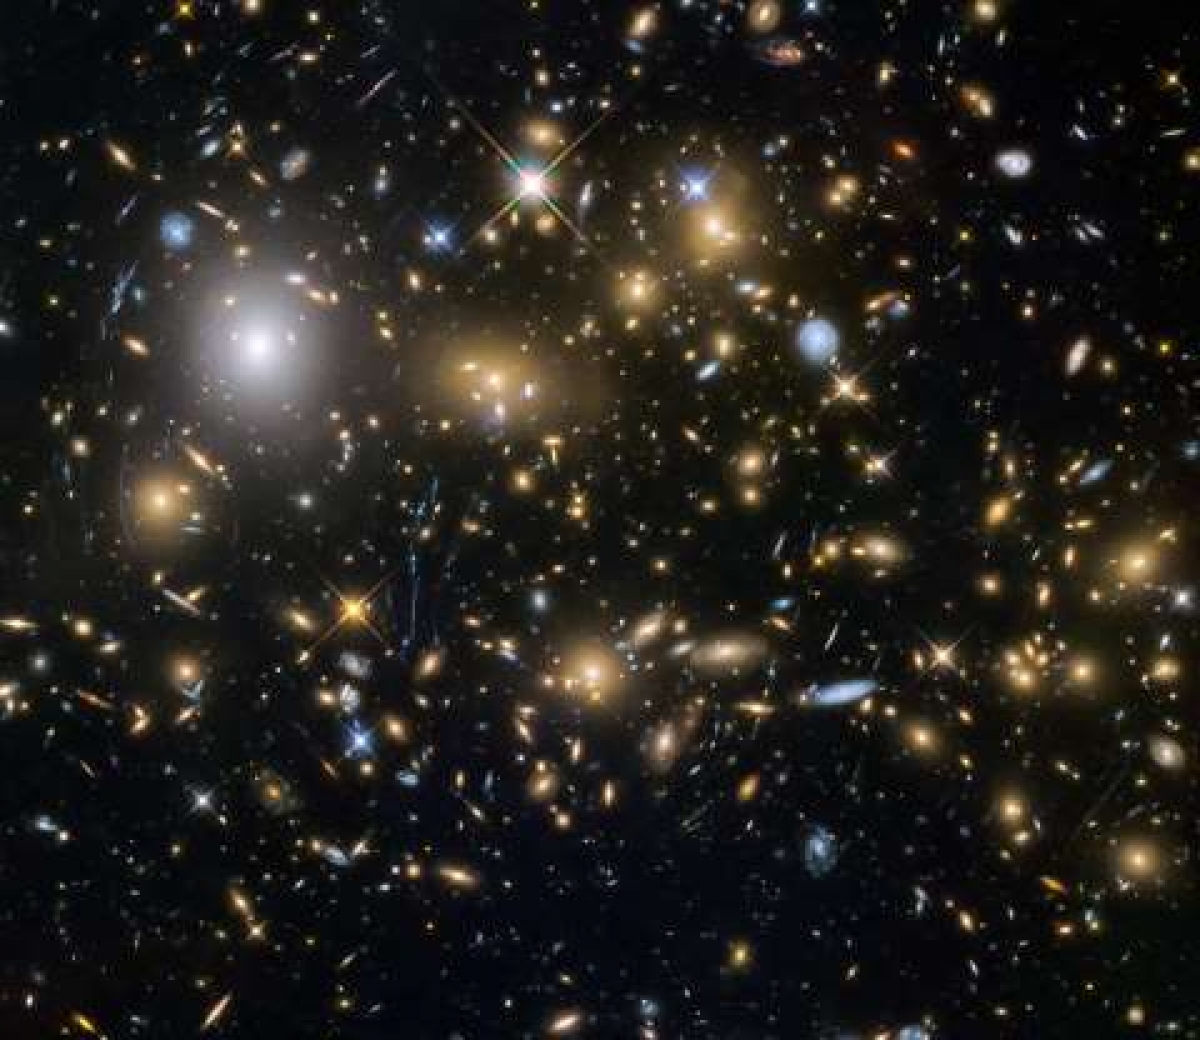 Năm 2015, Kính Thiên văn Hubble đã quan sát được thời điểm cách đây 12 tỷ năm để mở cánh cửa nhìn sâu hơn vào vũ trụ thuở sơ khai. Kính thiên văn này đã quan sát được những thiên hà ra đời sớm nhất và mờ nhất, trong số đó có những thiên hà được hình thành chỉ cách vụ nổ Big Bang khoảng 600 triệu năm./.